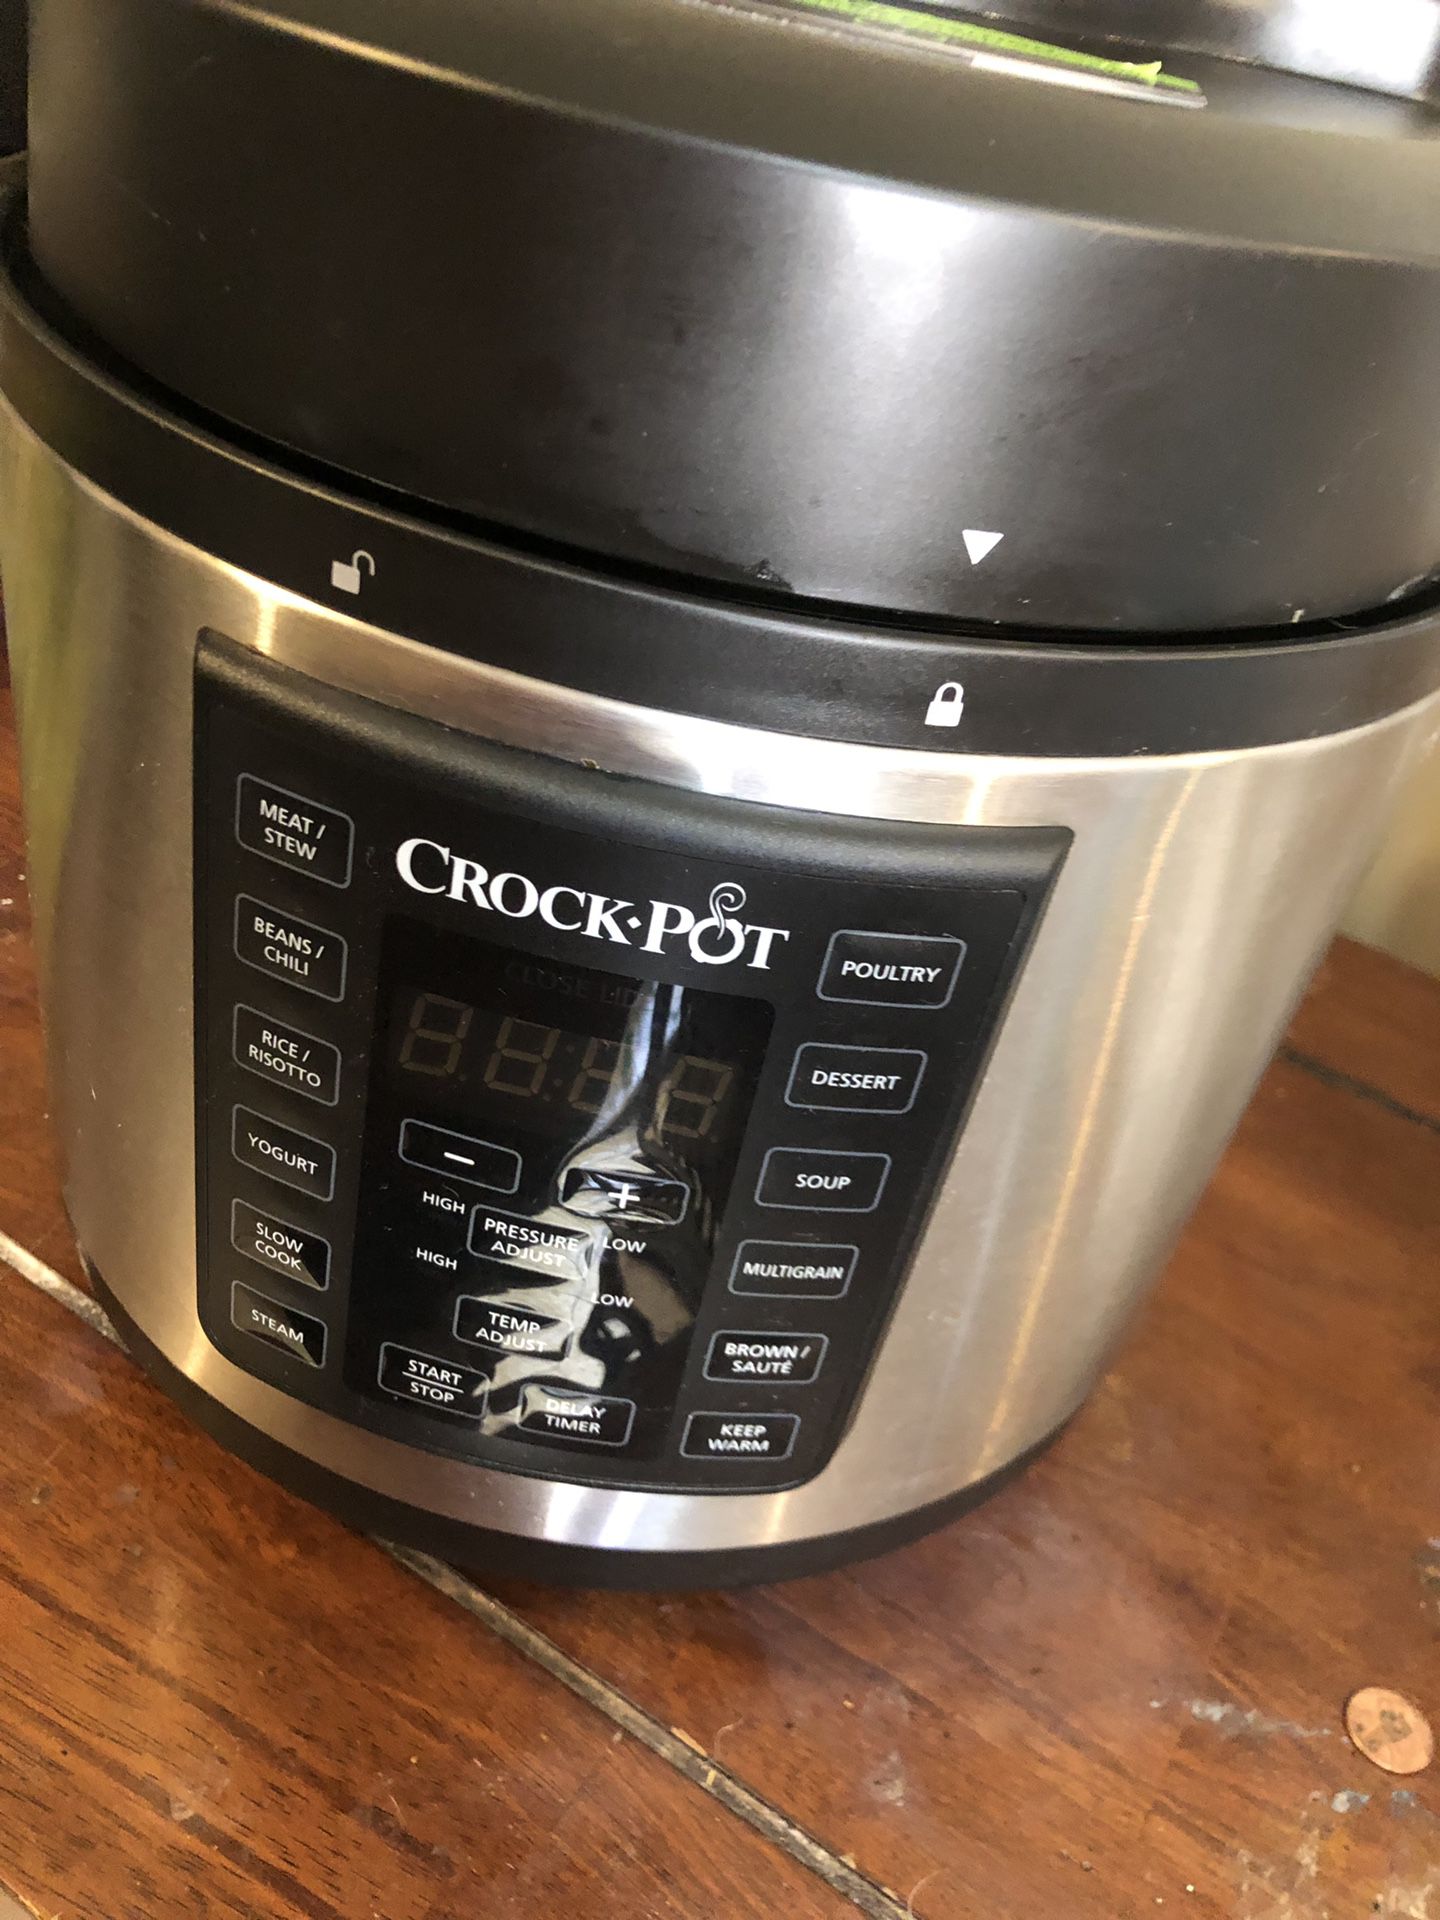 Crock pot pressure cooker